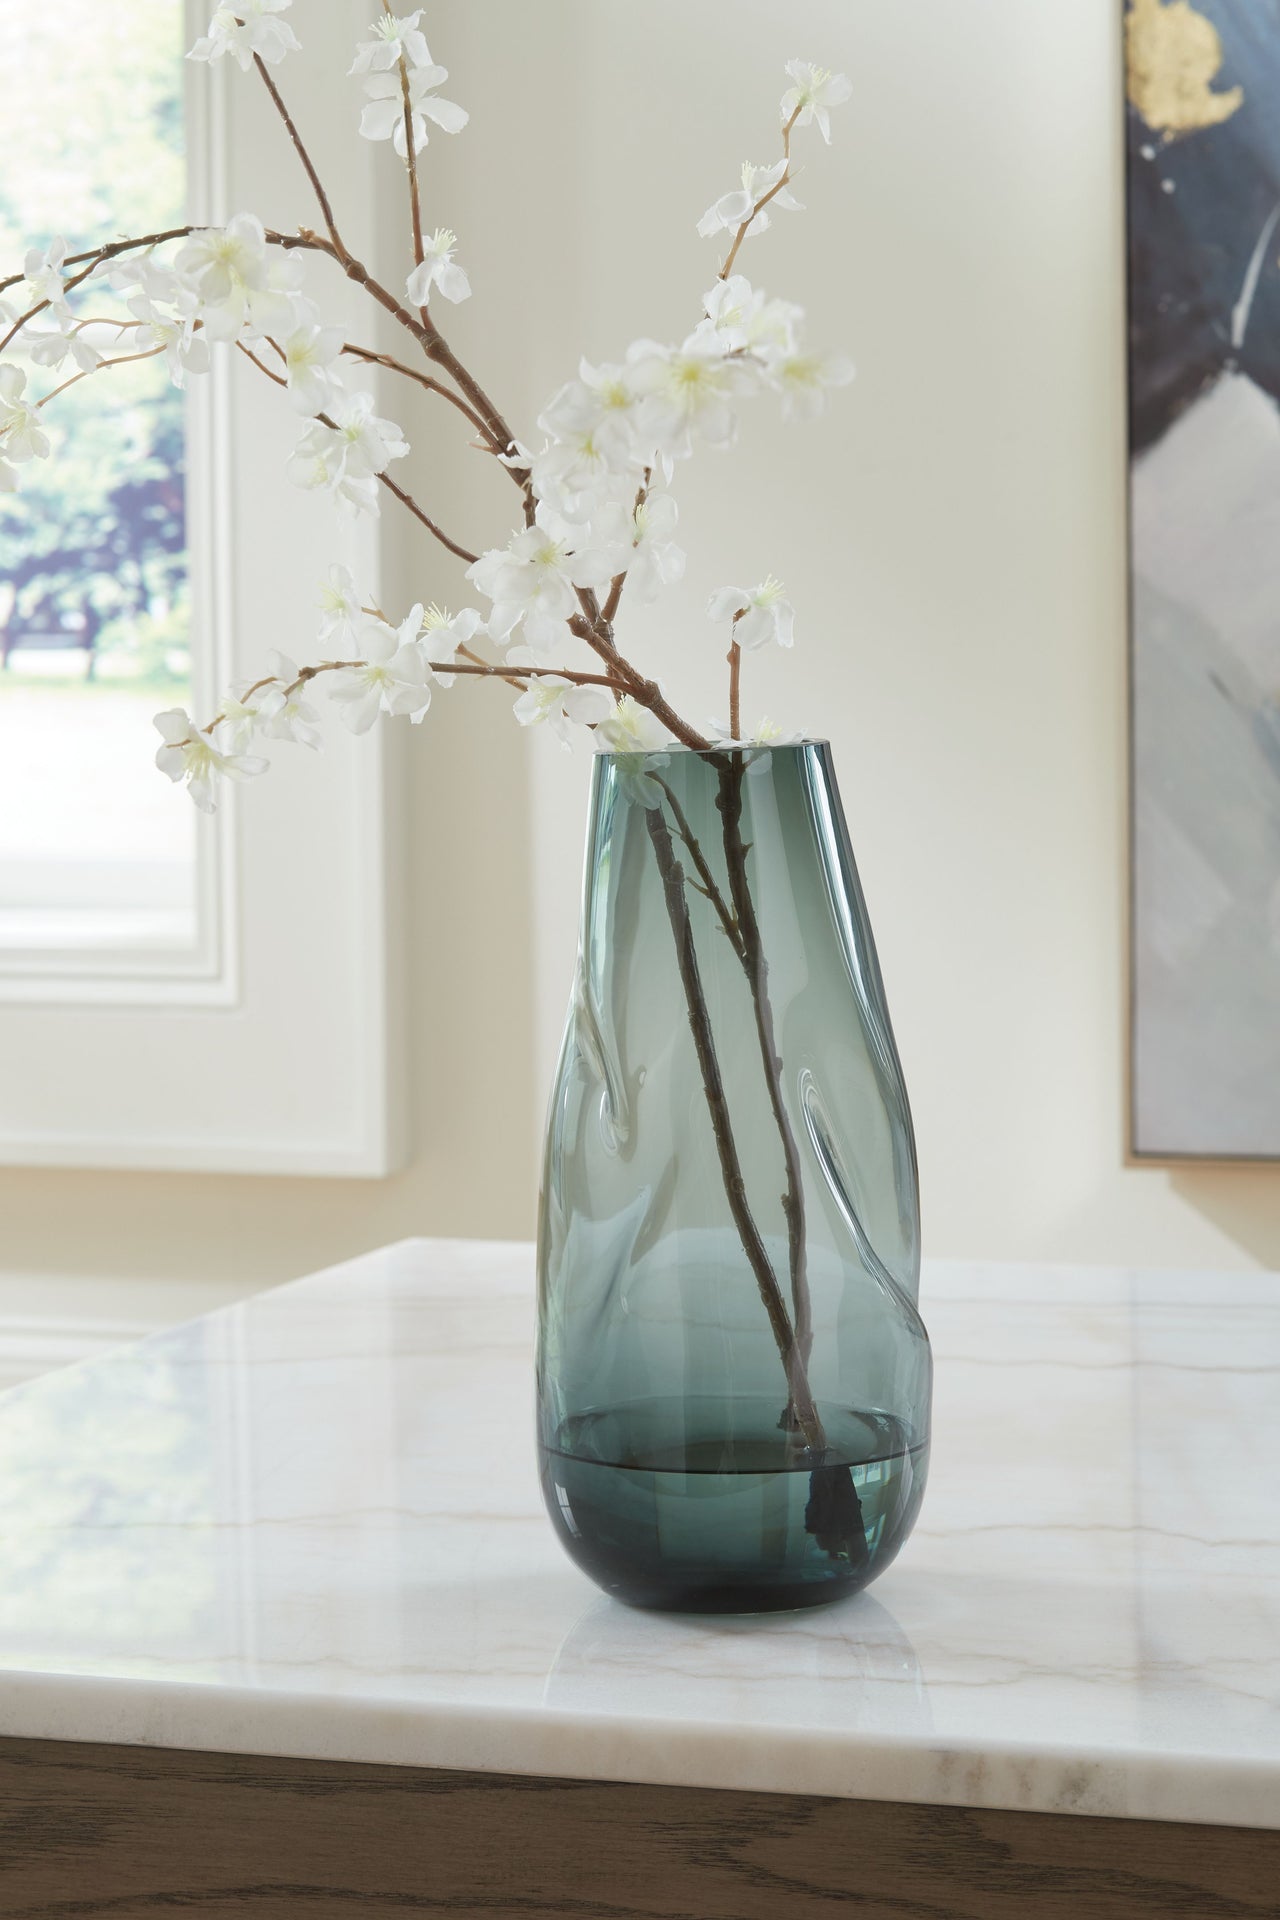 Beamund - Vase - 13" - Tony's Home Furnishings